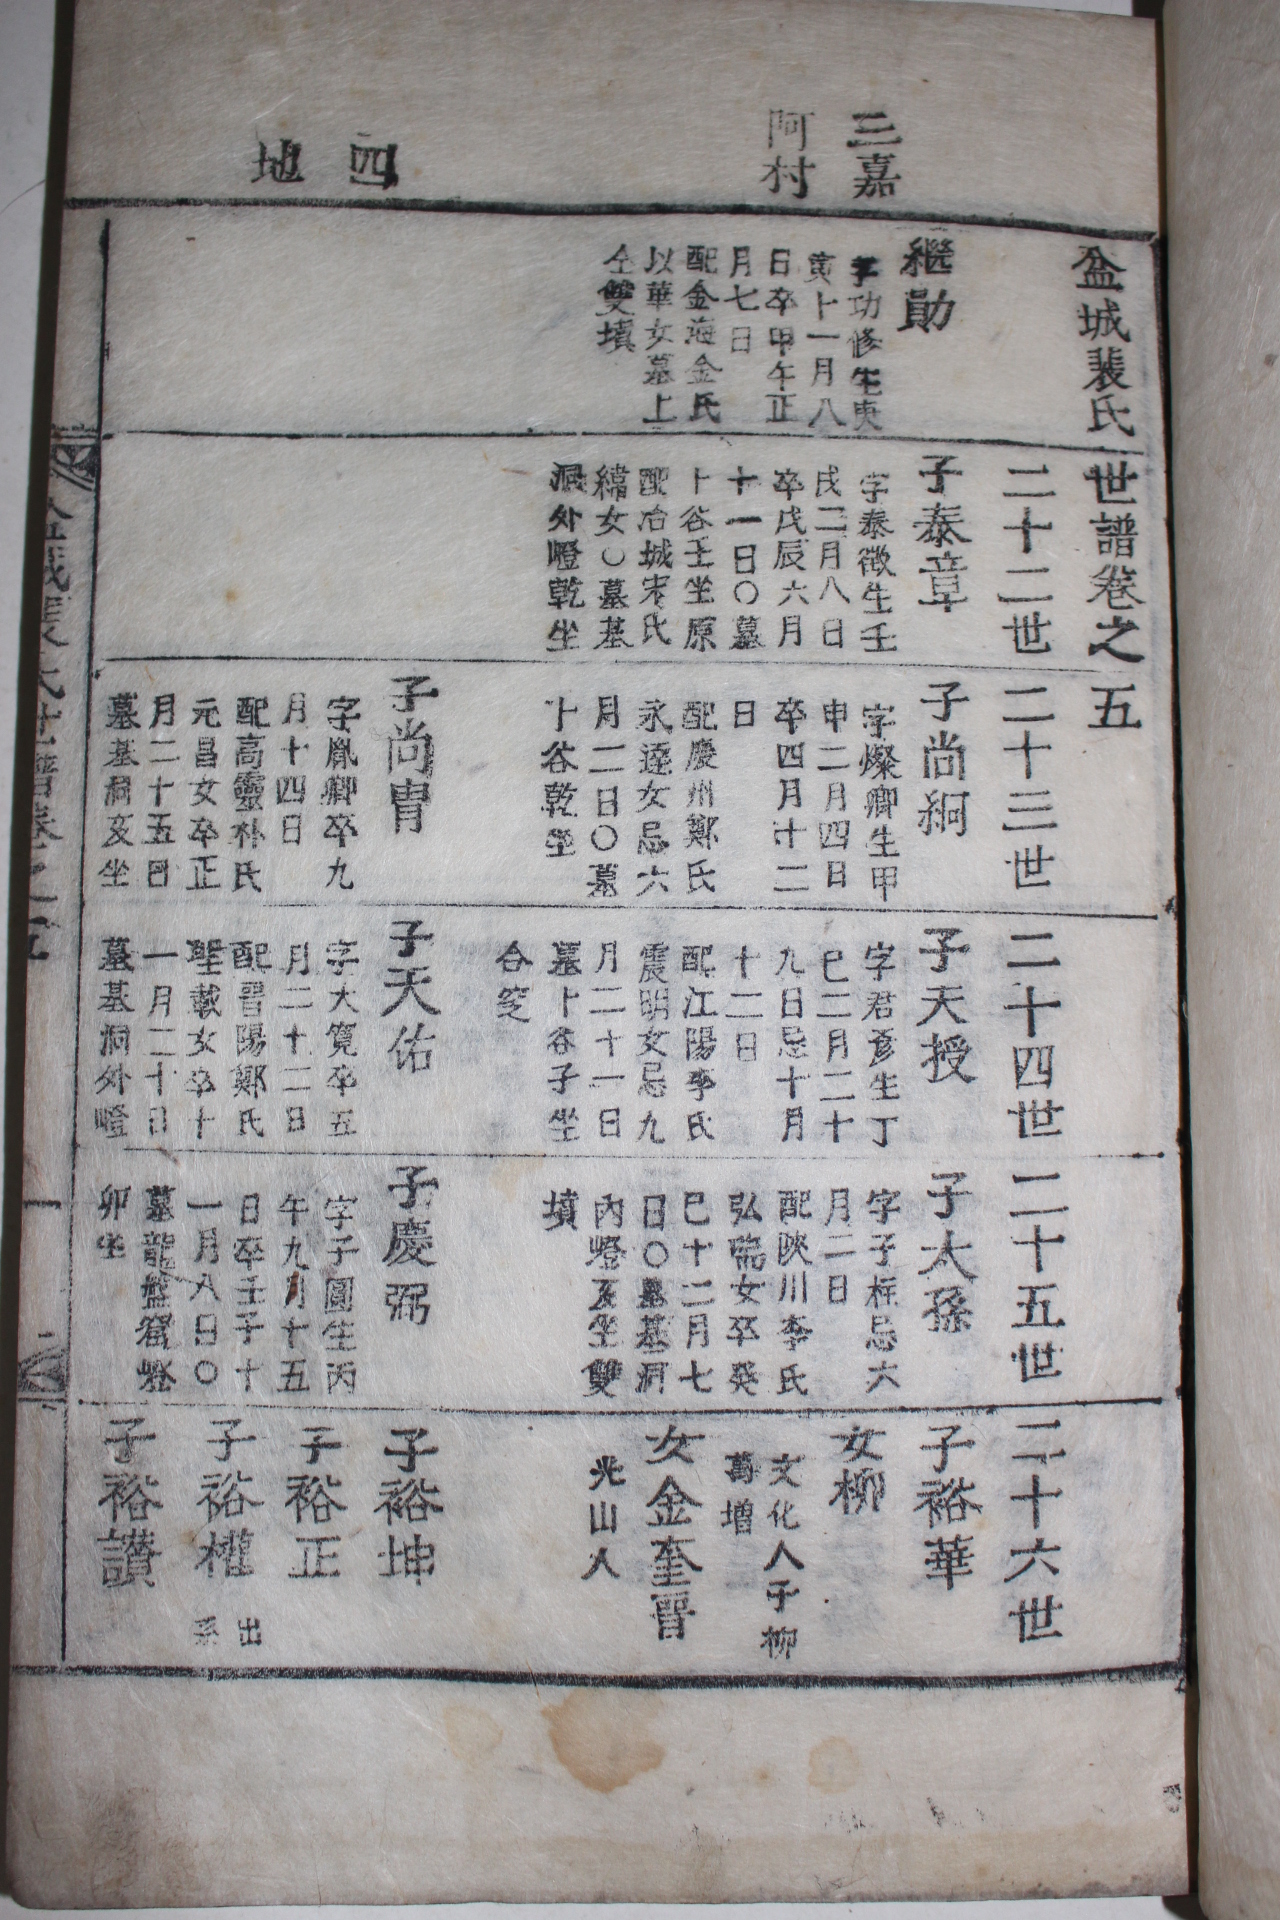 1862년(동치원년) 목활자본 분성배씨세보(盆城裵氏世譜) 5책